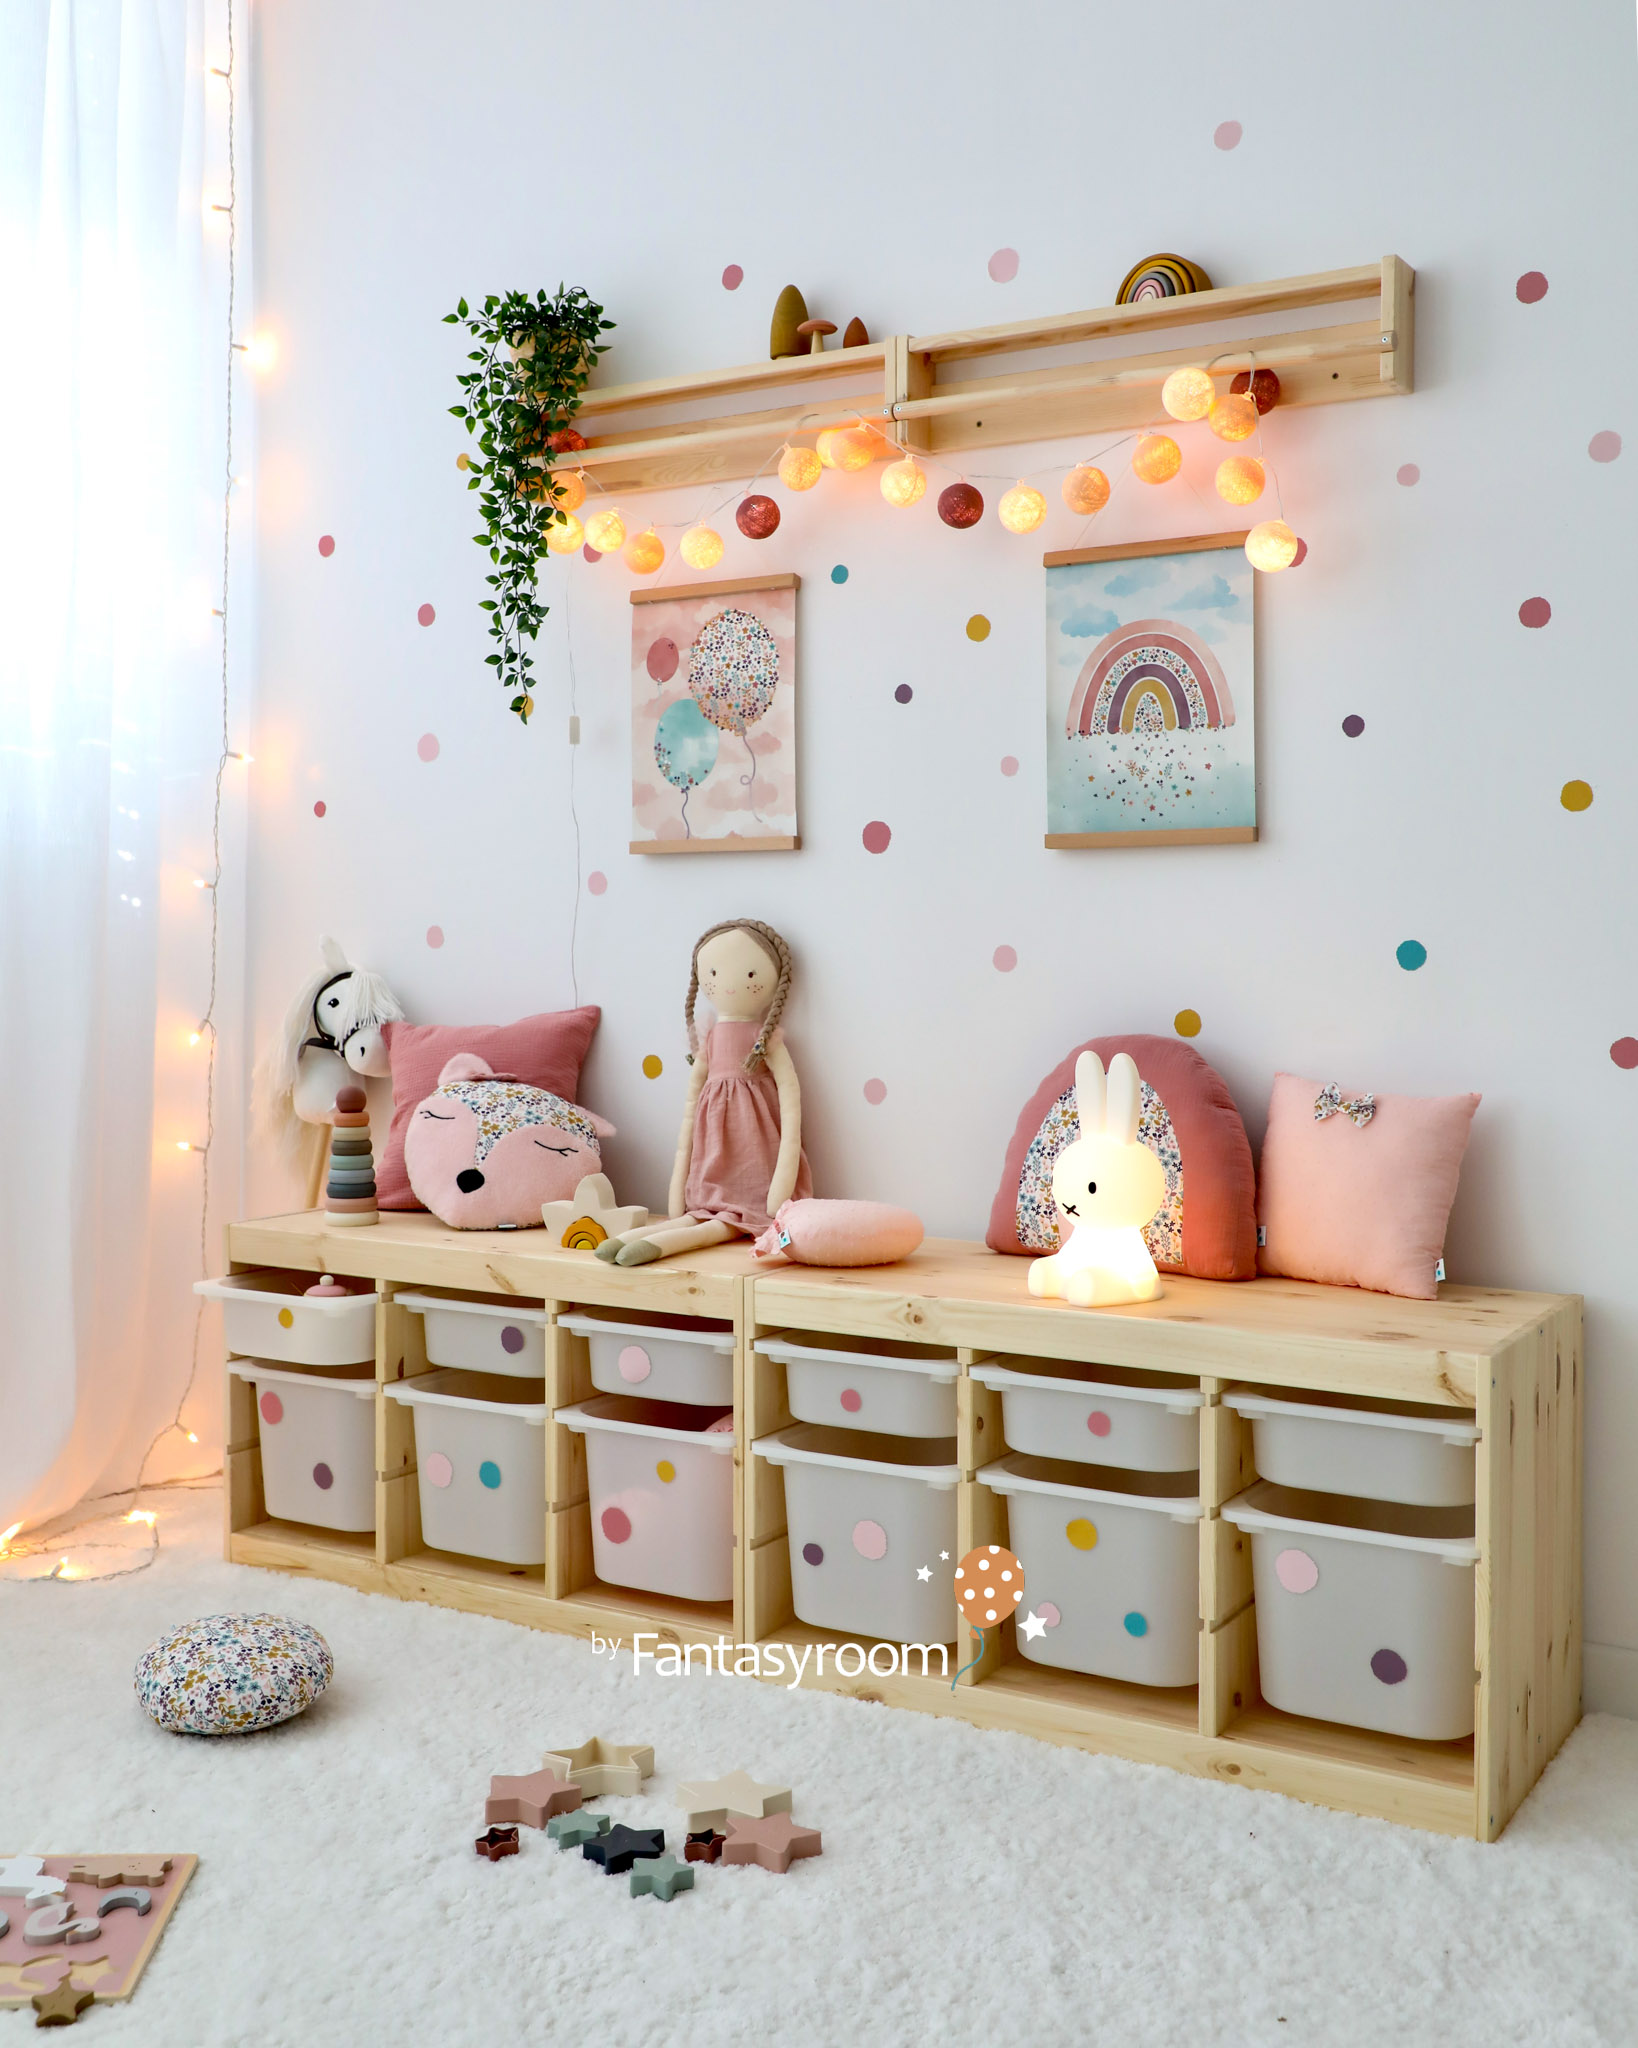 Kinder Spielzimmer mit Holzregal, Deko und Spielzeug in Pastellfarben